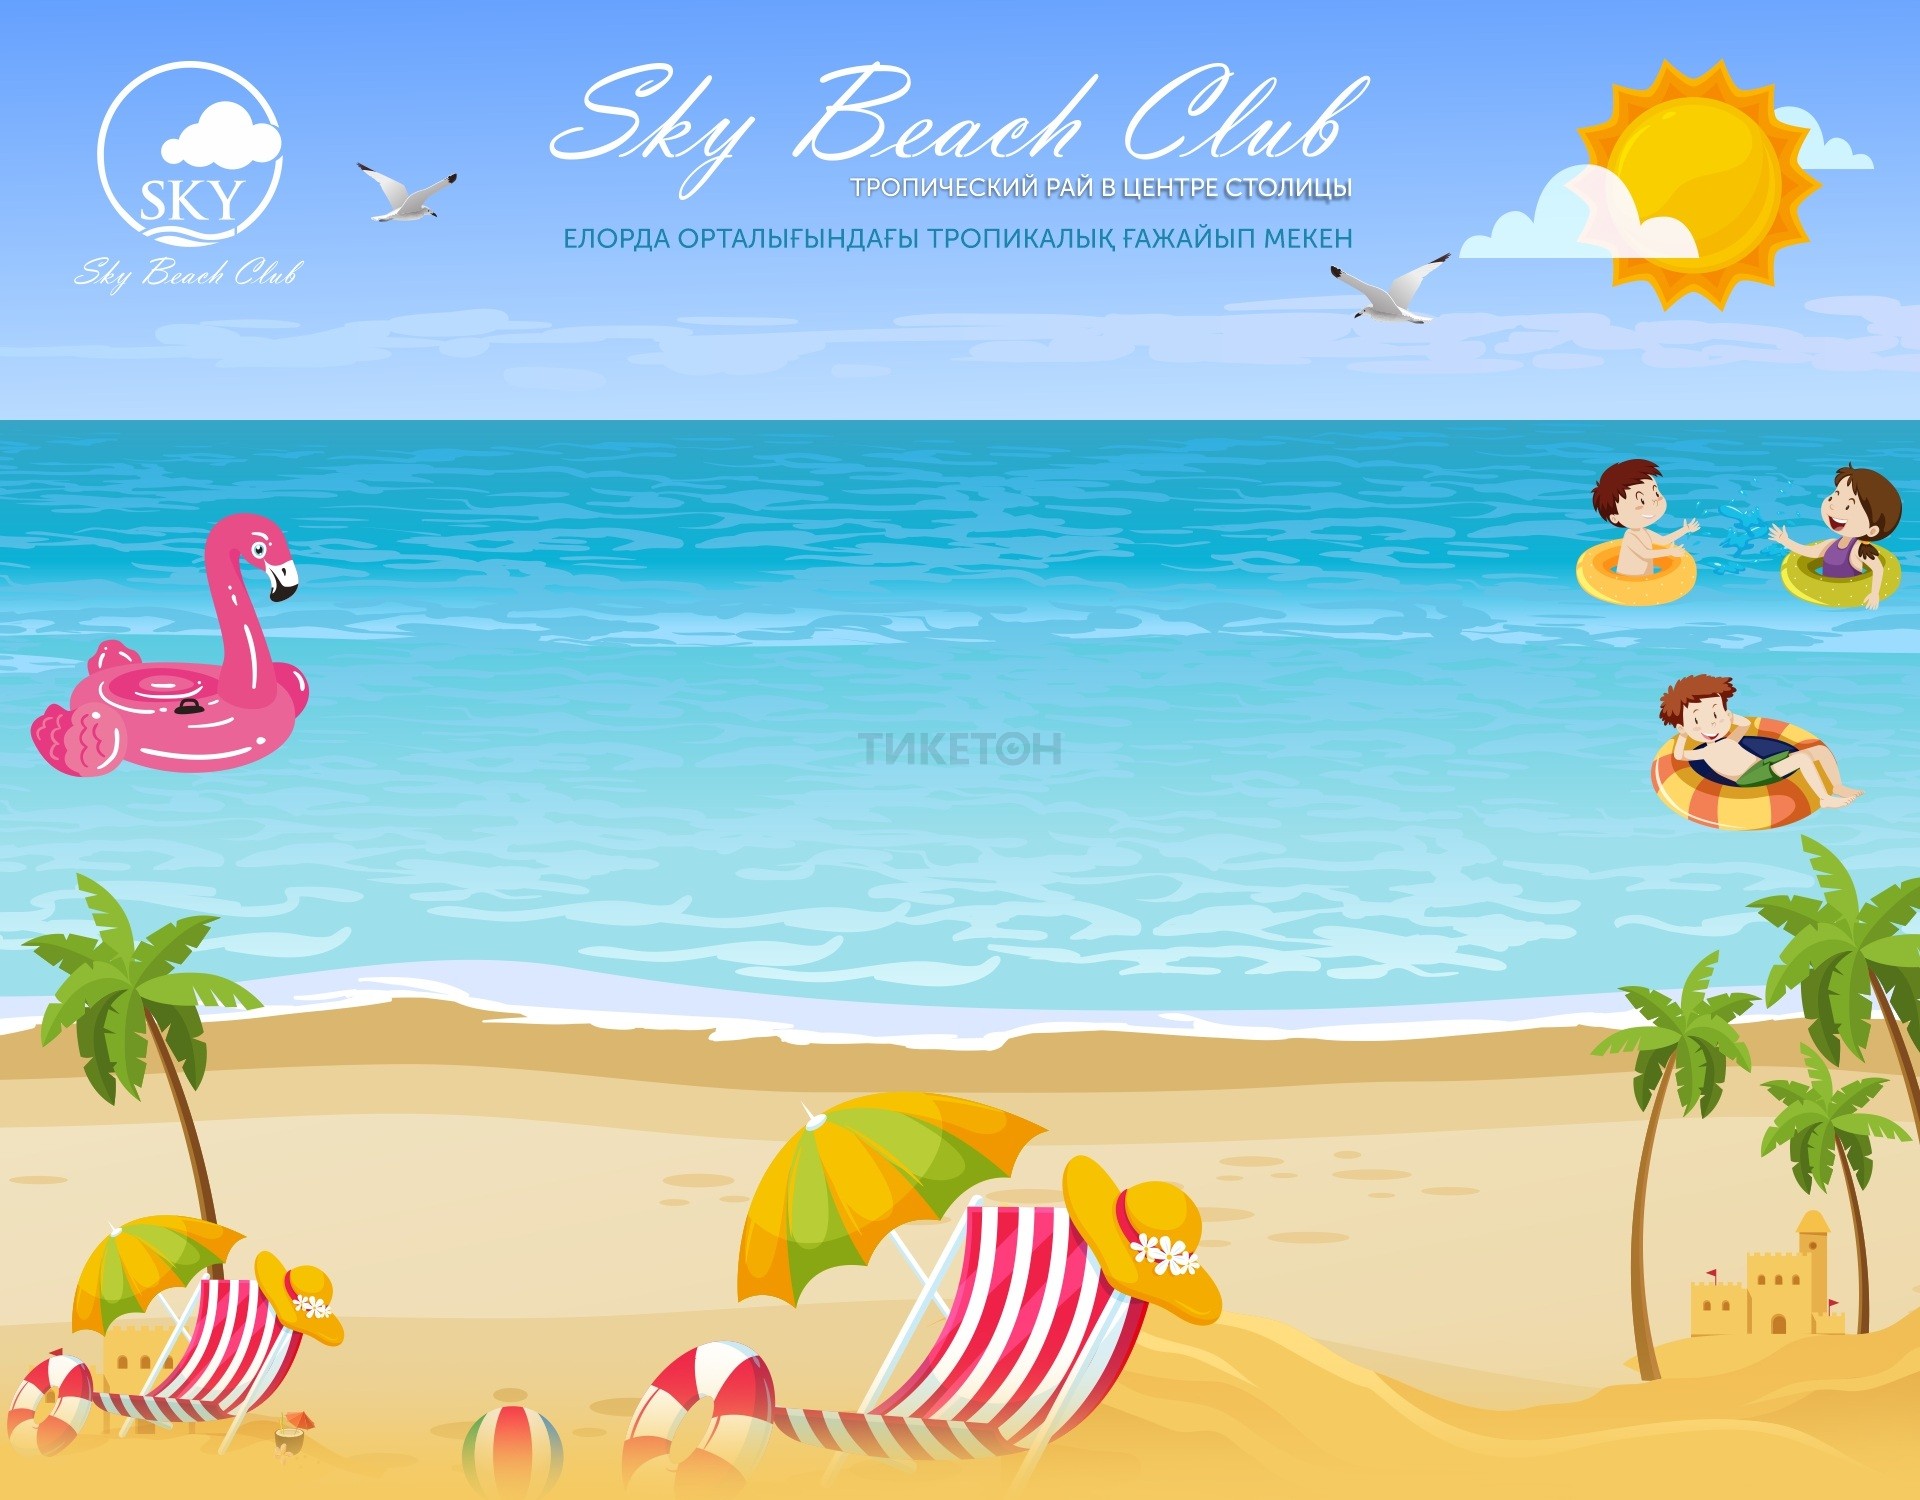 Sky Beach Club: Пляжный клуб